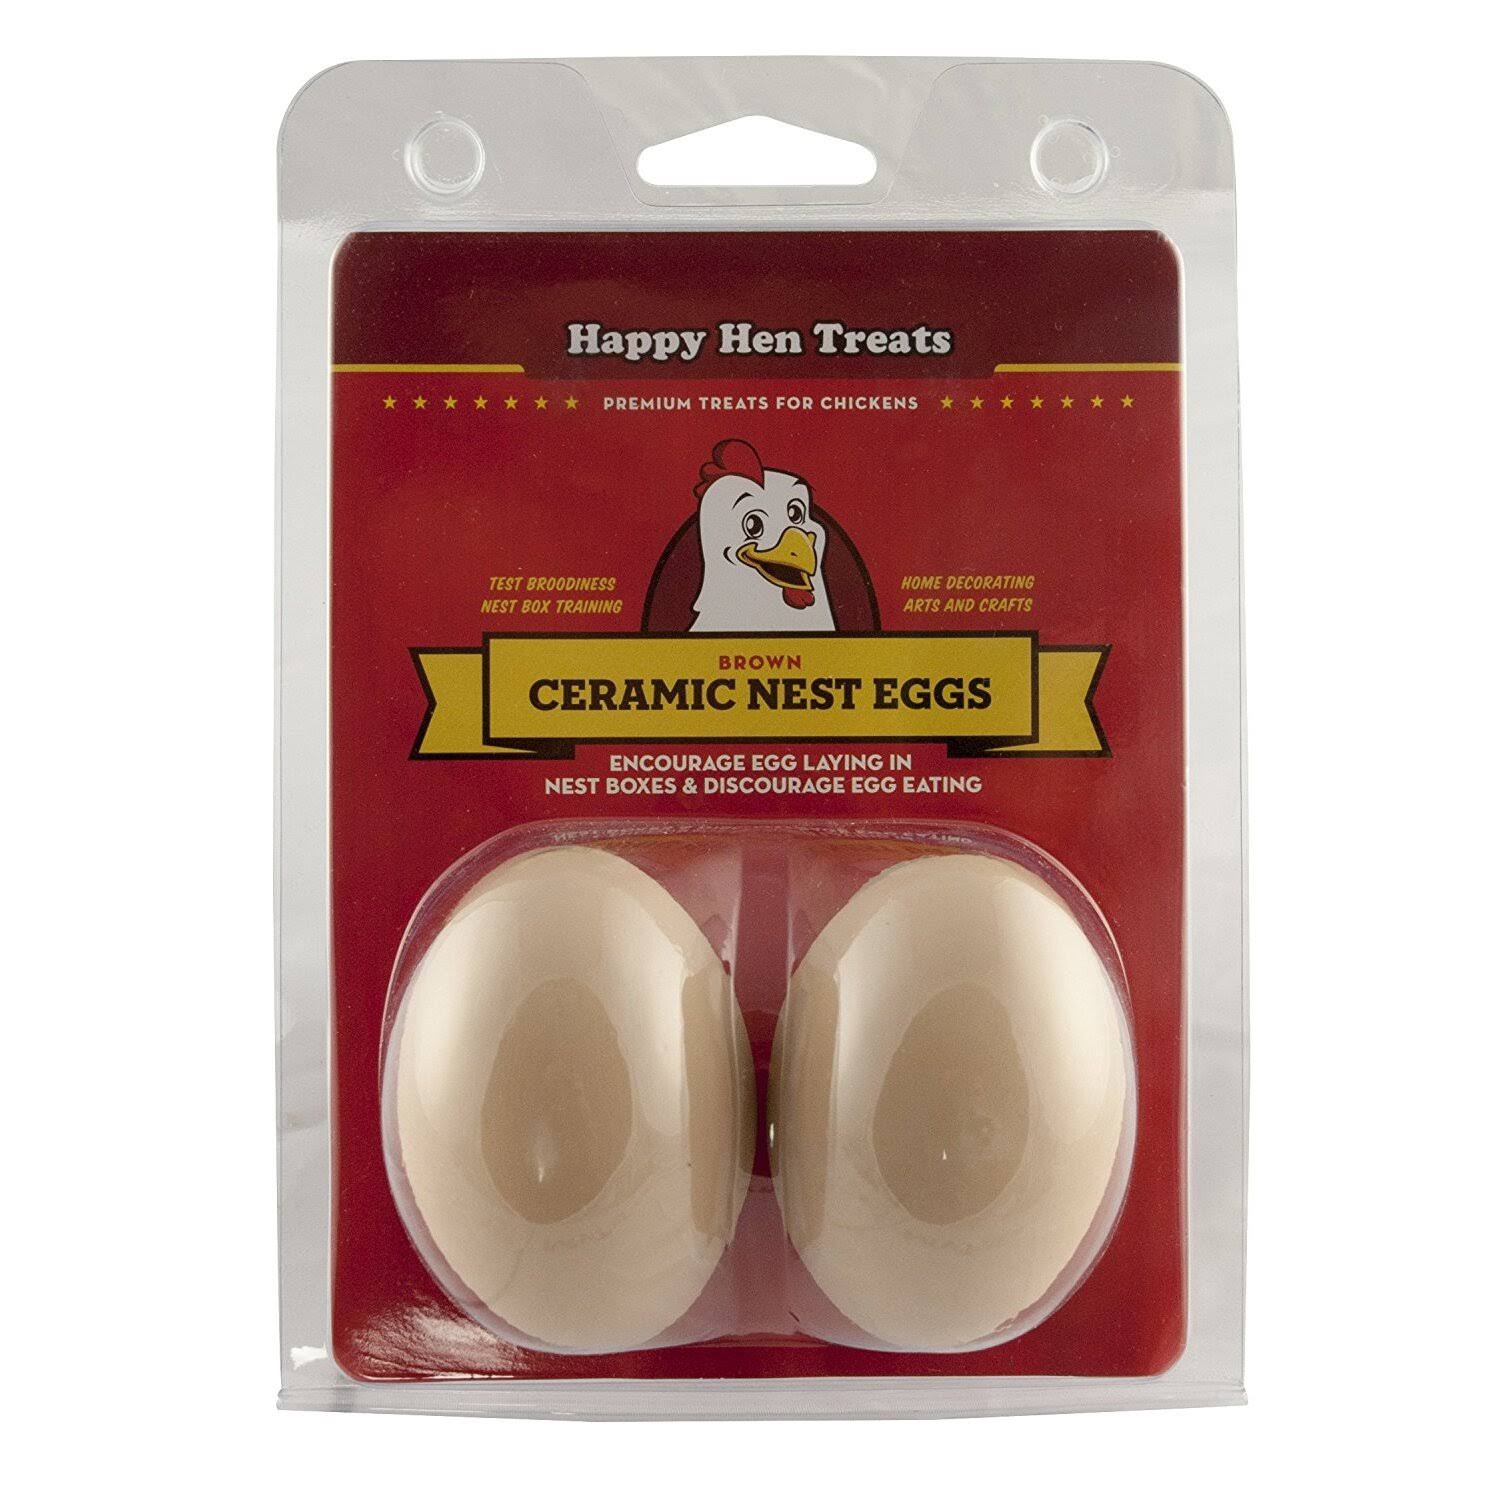 Happy Hen Treats Ceramic Nest Eggs - Brown